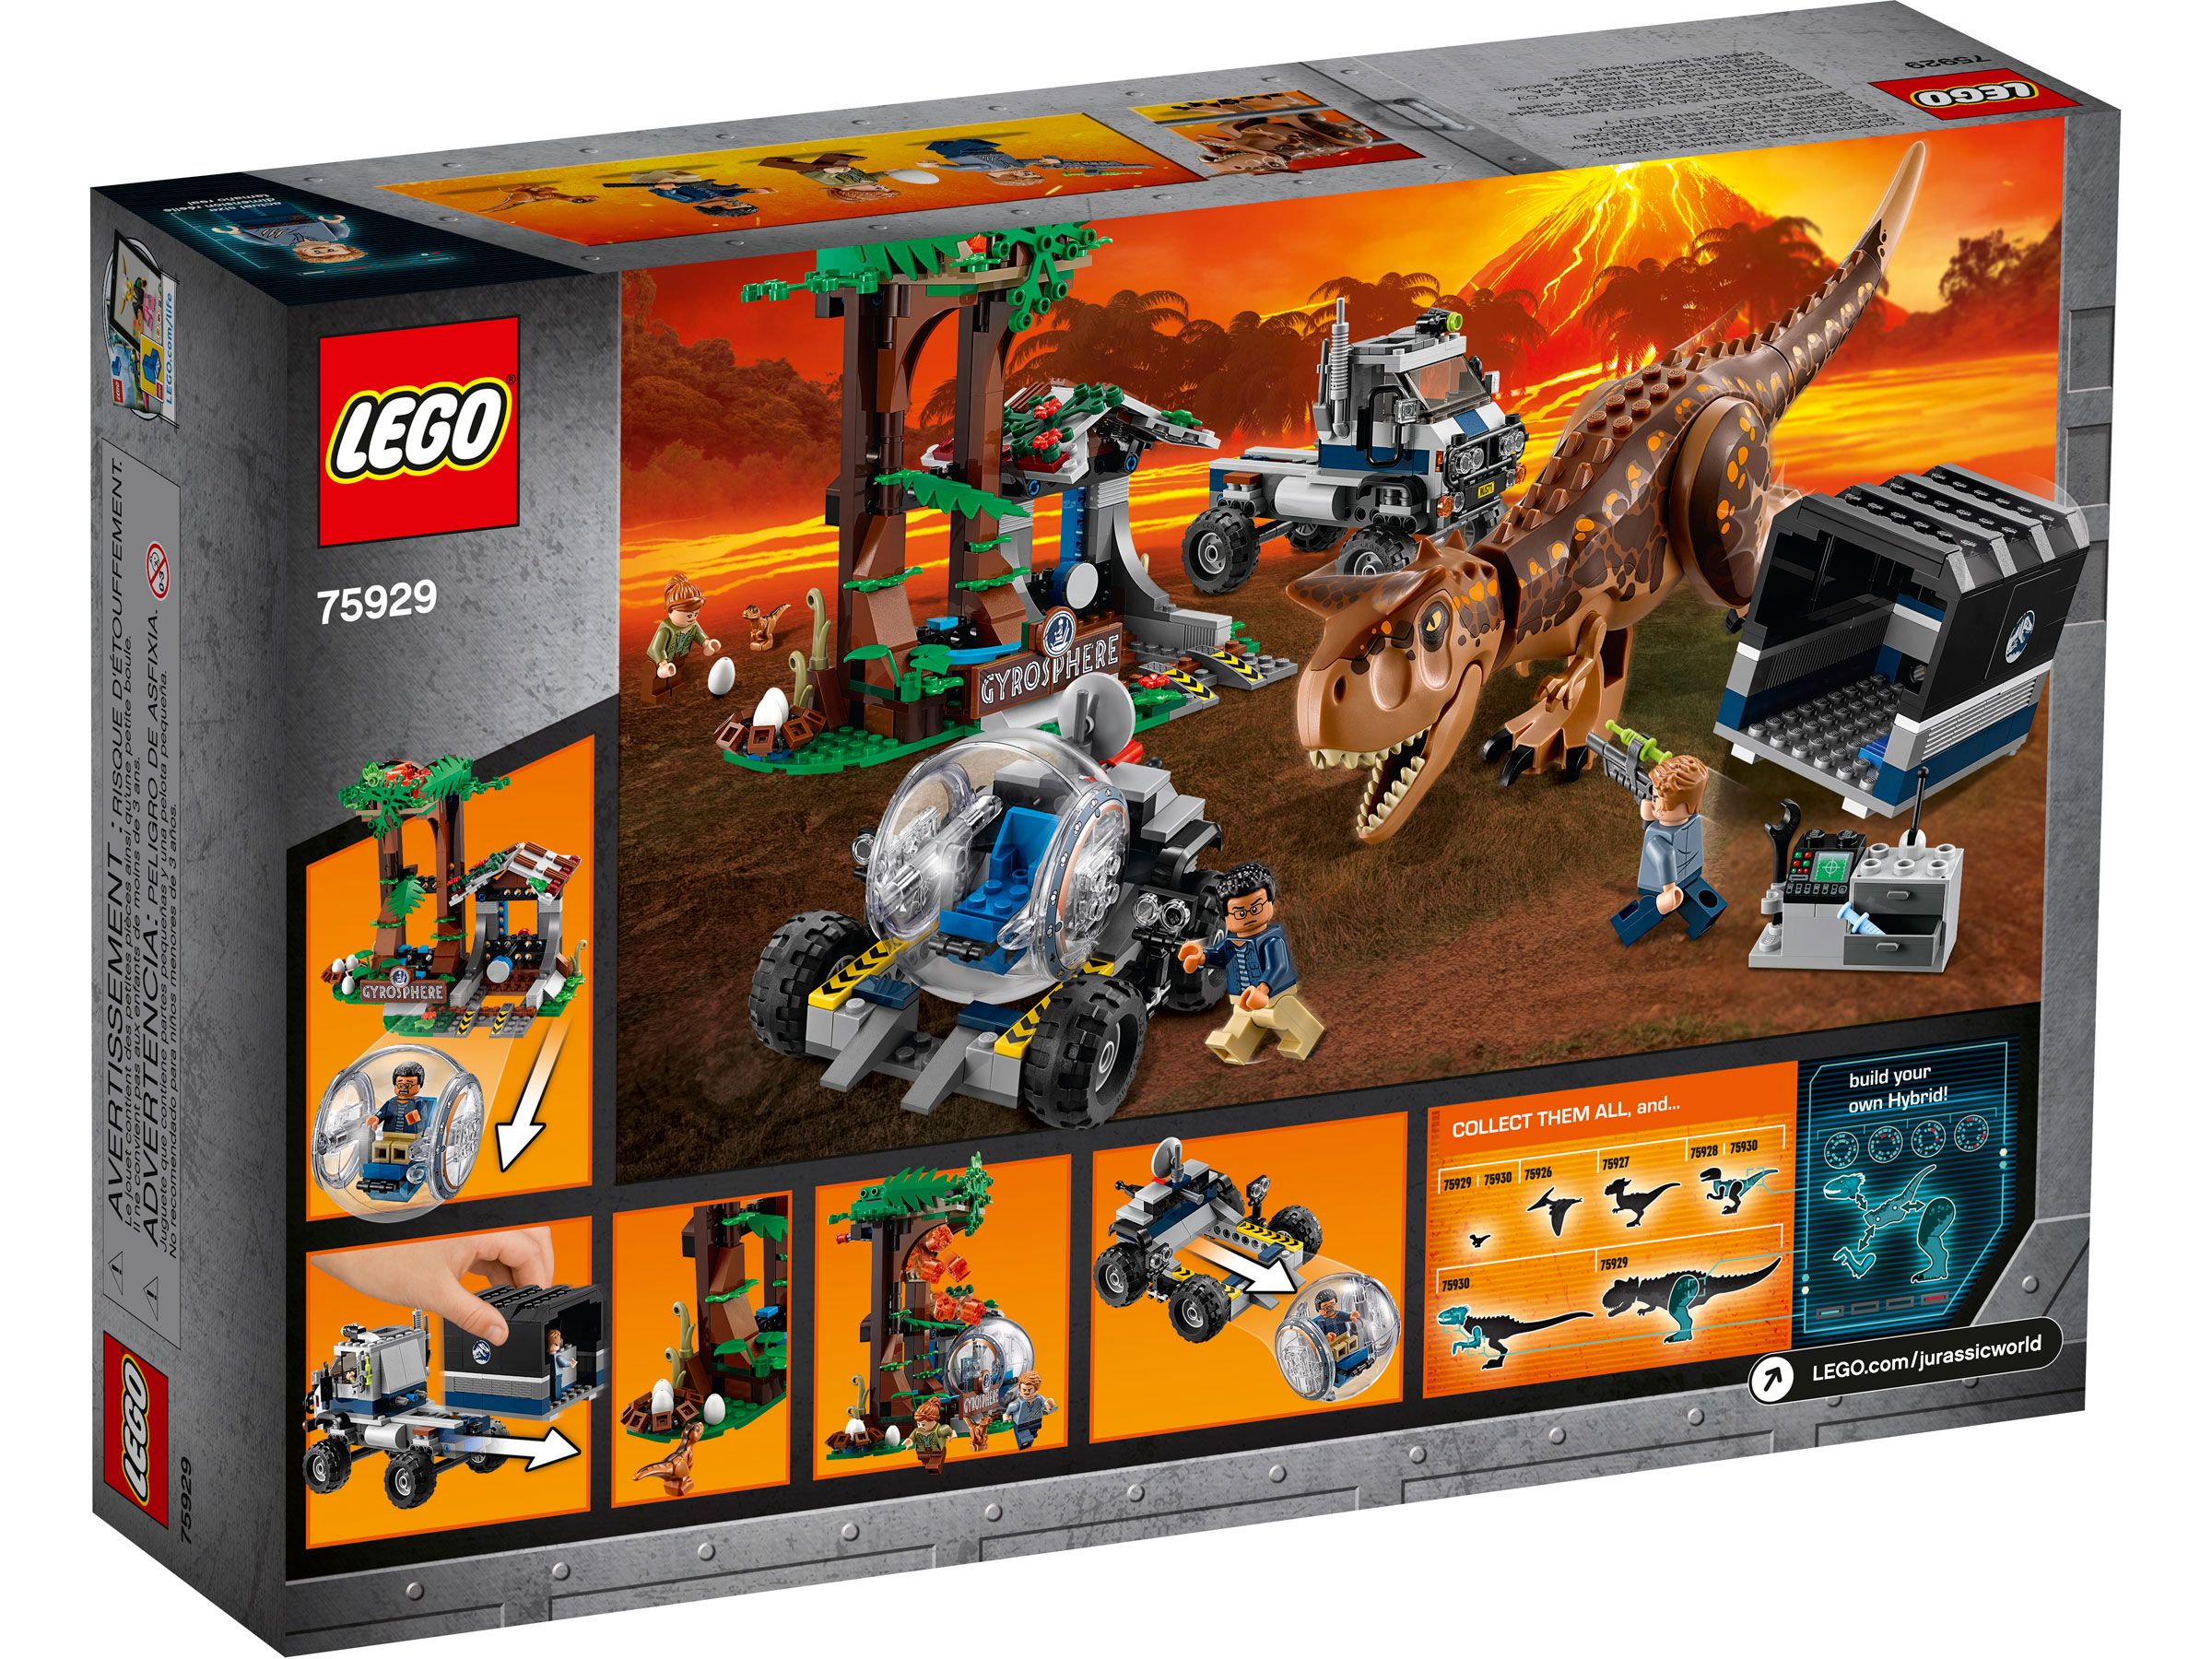 LEGO Jurassic World 75929 Carnotaurus - Flucht in der Gyrosphere LEGO_75929_Box5_v39.jpg